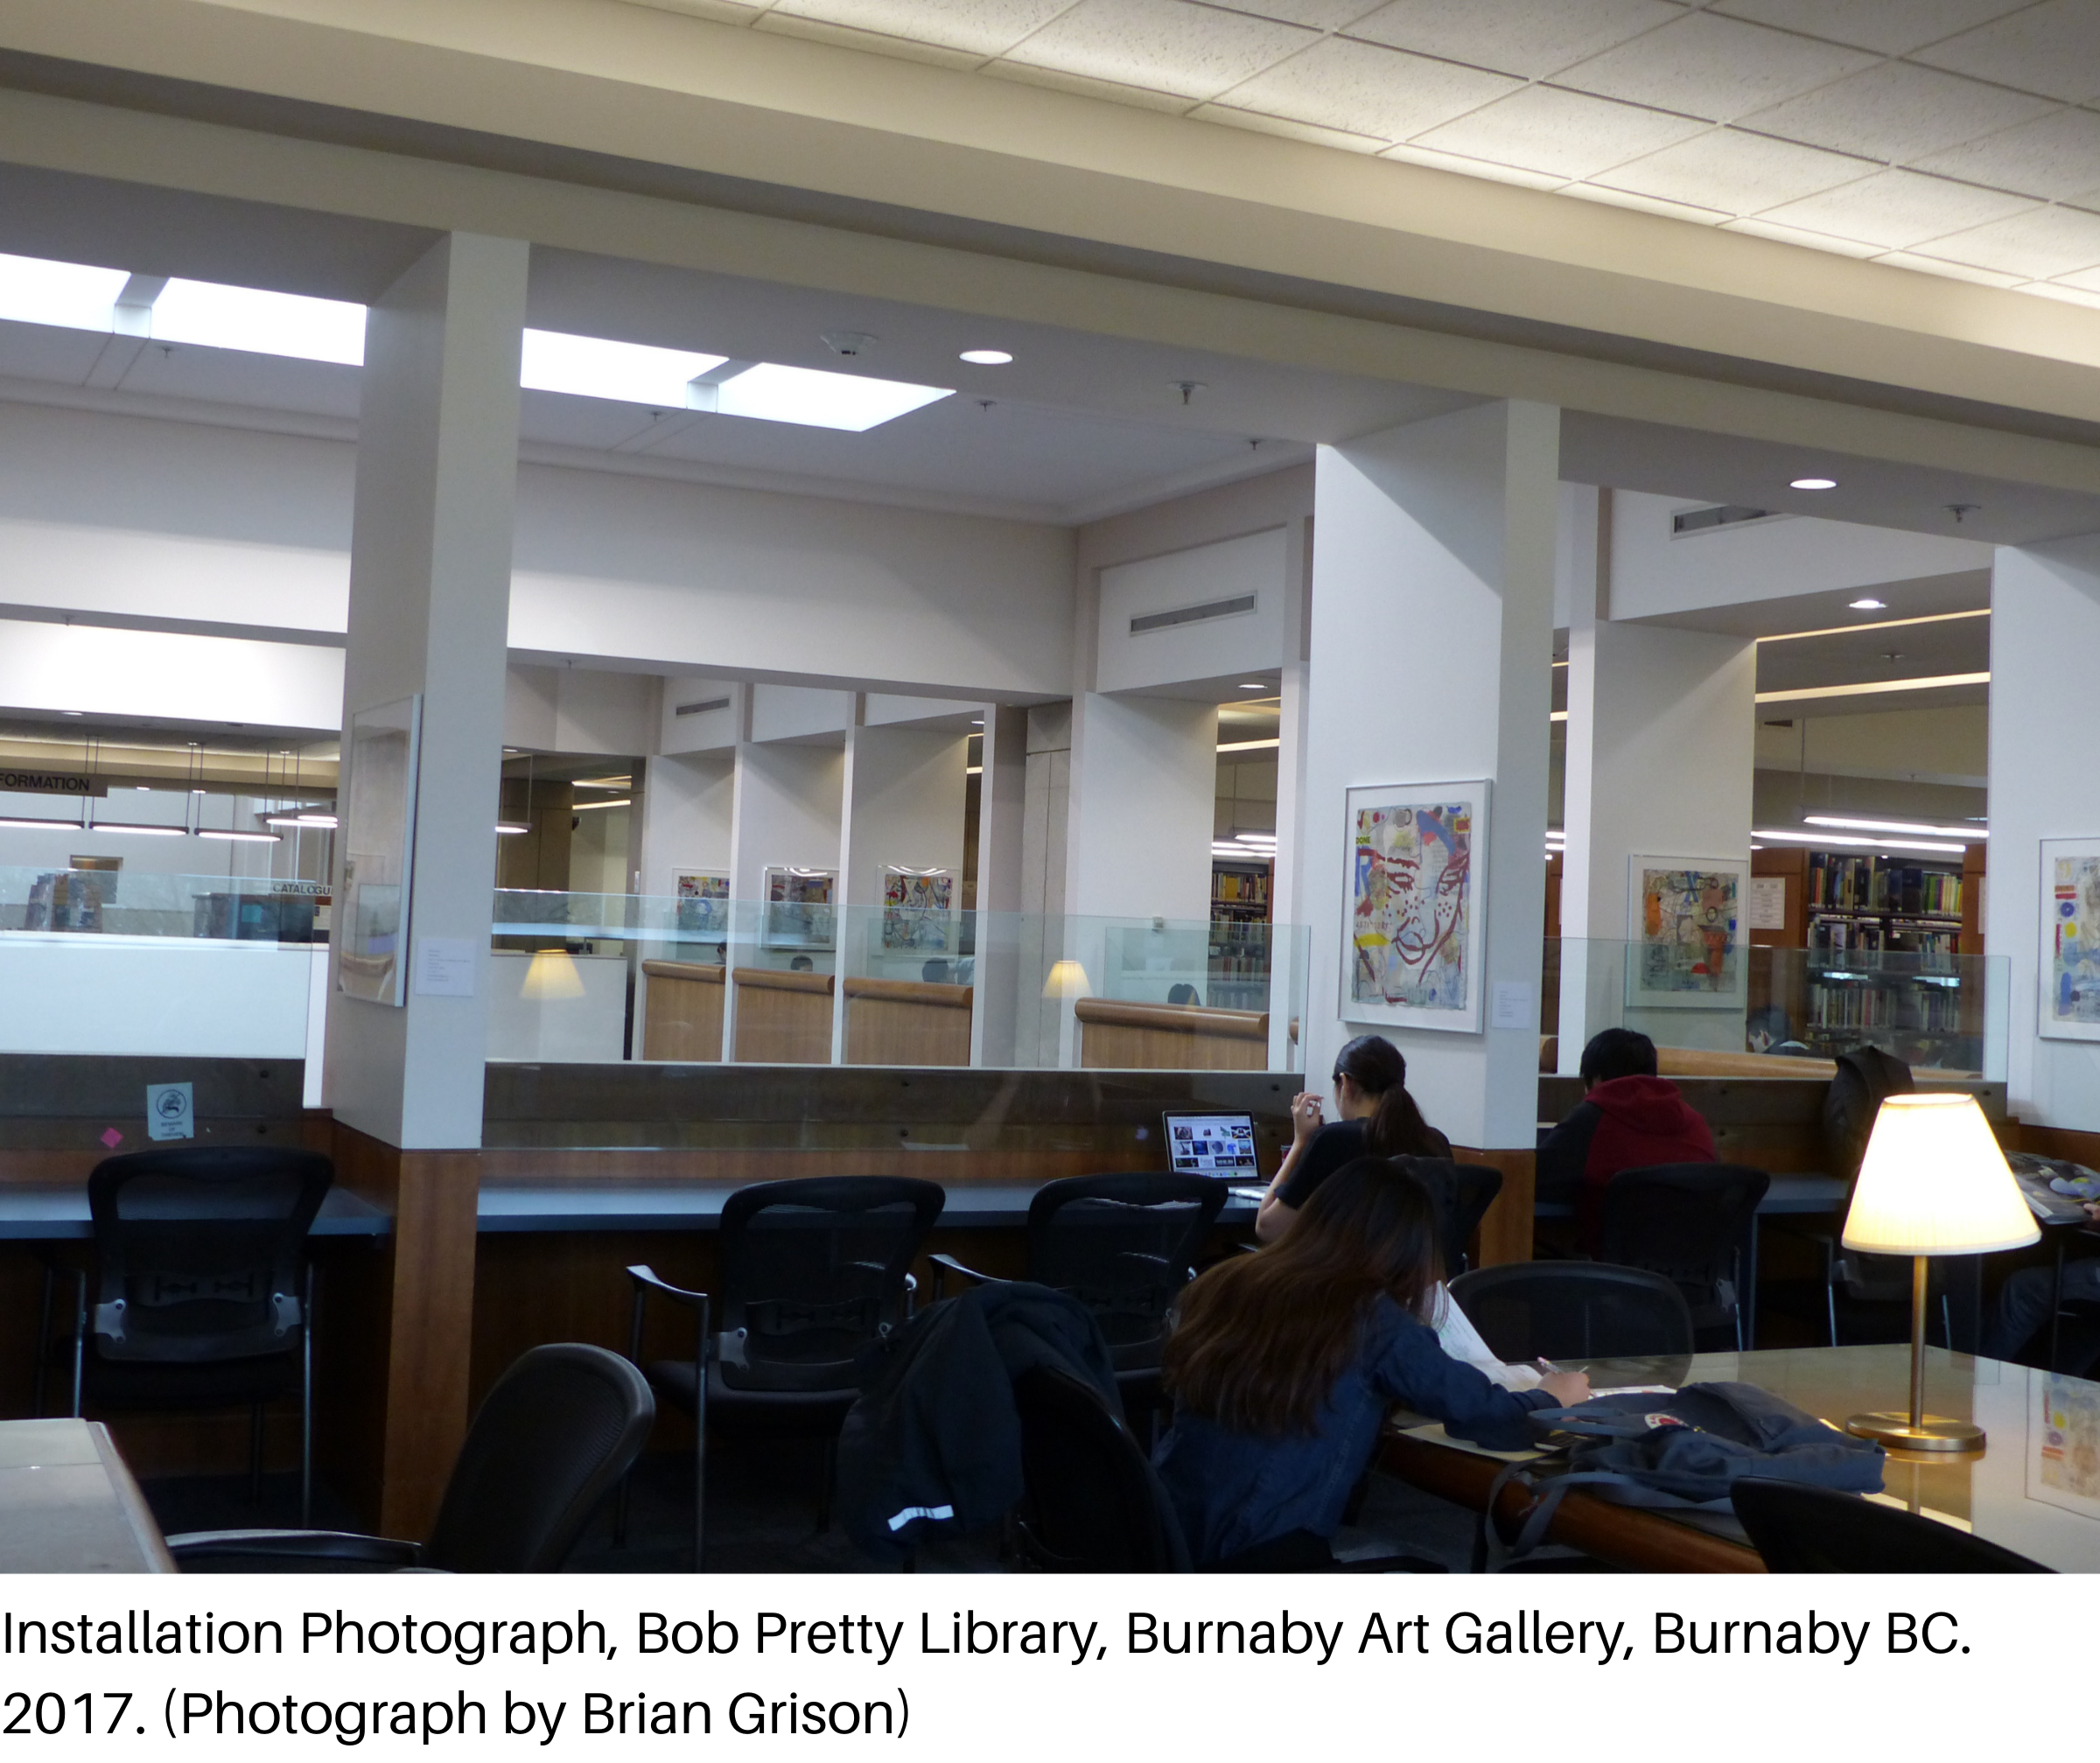 Installation Photograph, Bob Pretty Library, Burnaby Art Gallery, Burnaby BC. 2017. (Photograph by Brian Grison)